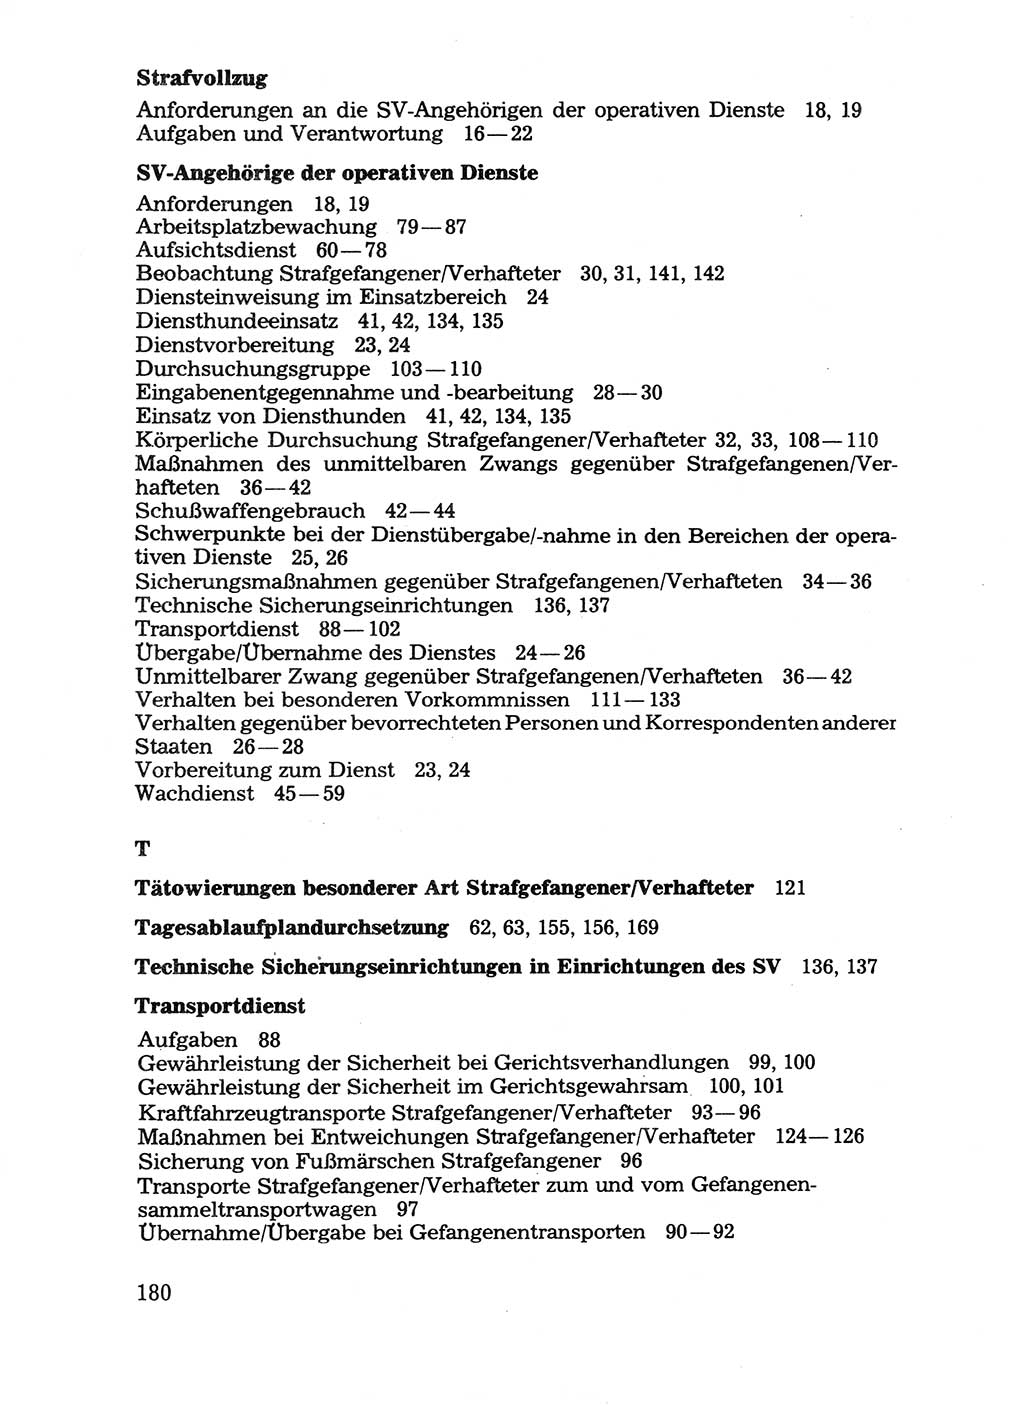 Handbuch für operative Dienste, Abteilung Strafvollzug (SV) [Ministerium des Innern (MdI) Deutsche Demokratische Republik (DDR)] 1981, Seite 180 (Hb. op. D. Abt. SV MdI DDR 1981, S. 180)